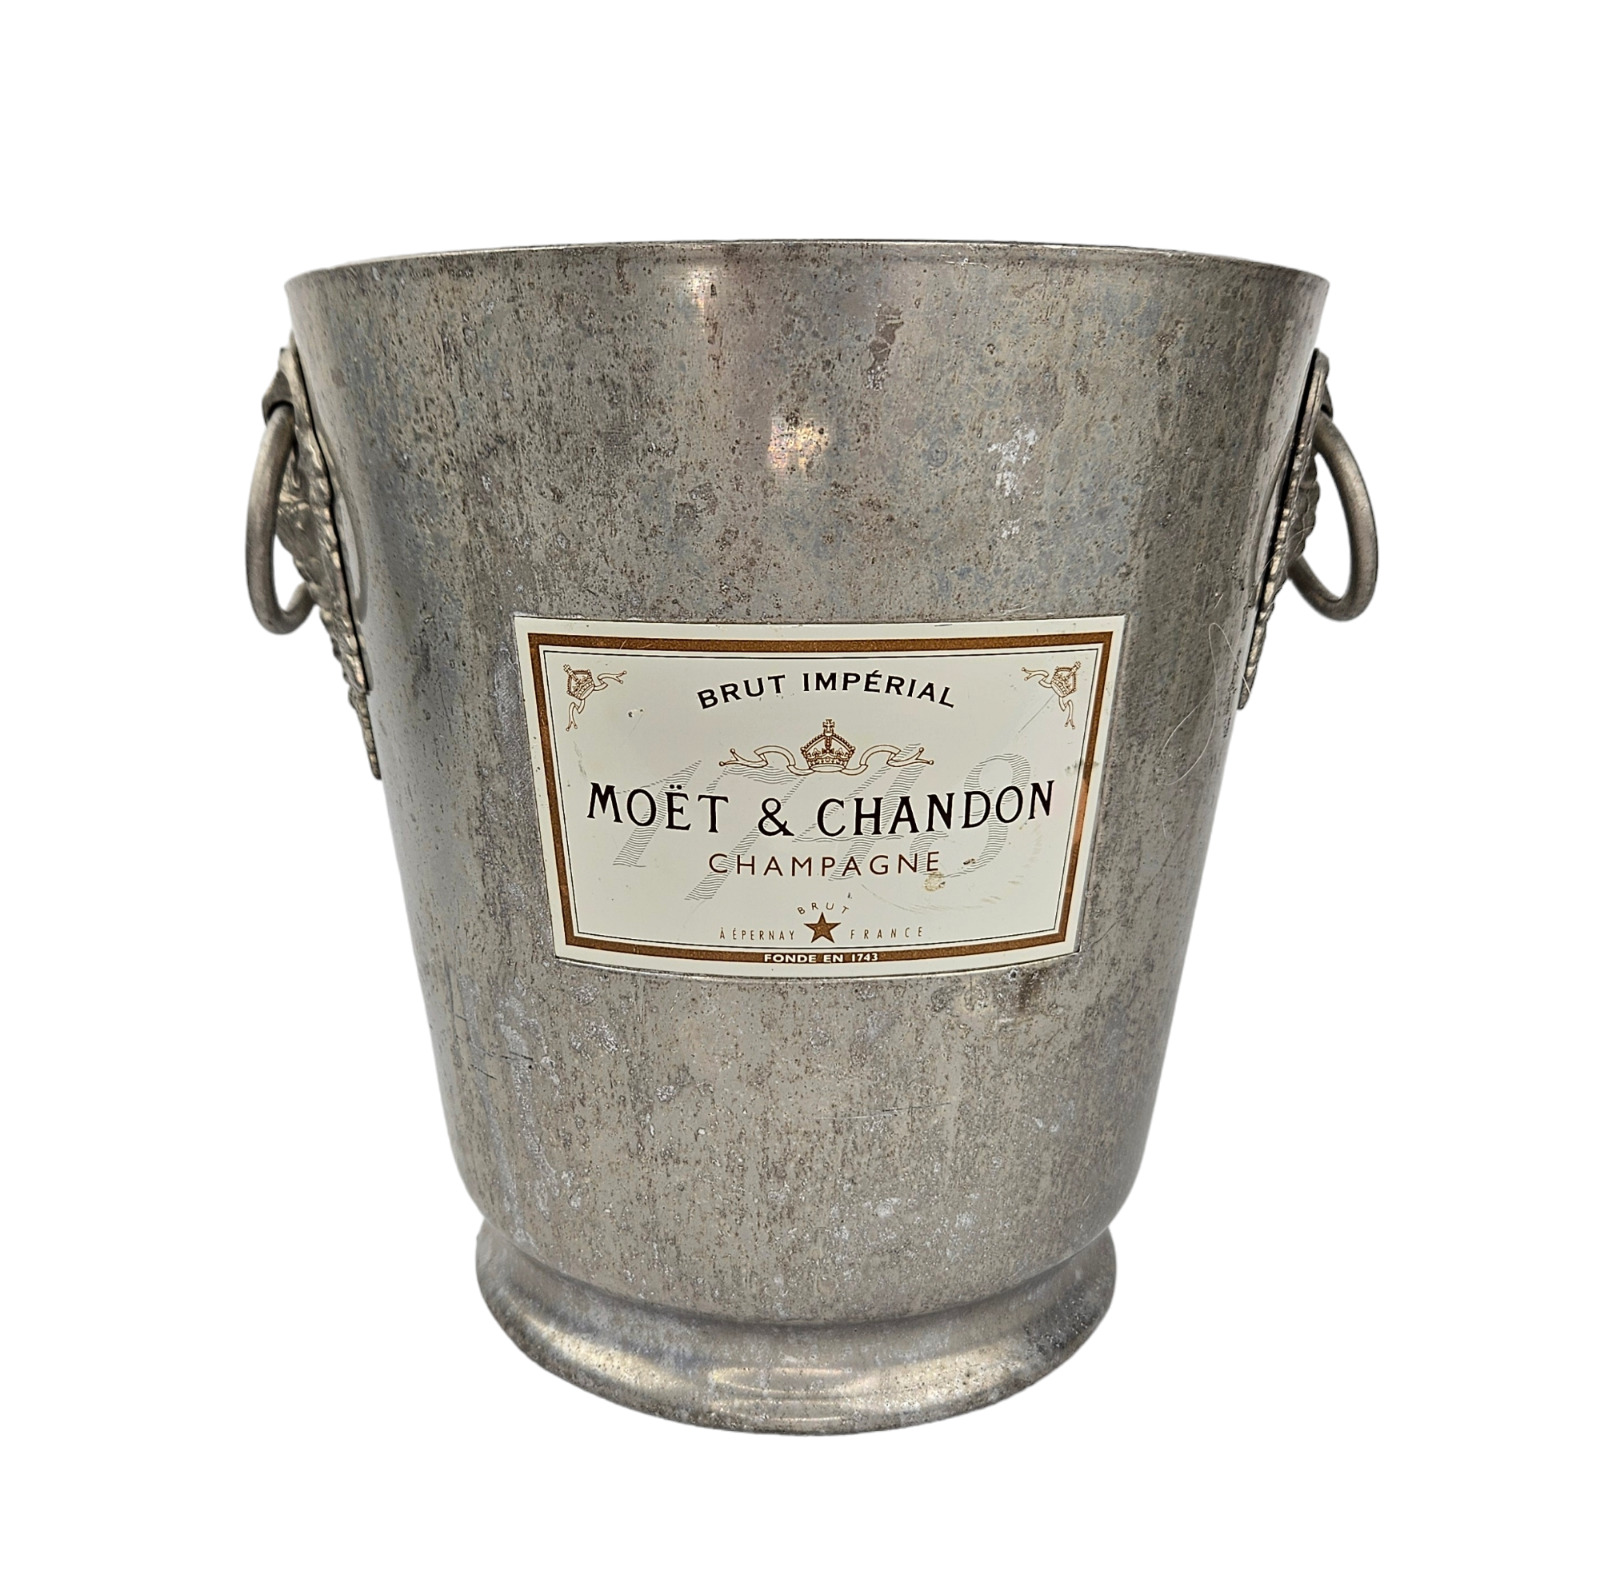 VTG Moet & Chandon France Aluminum Champagne Ice Bucket Vase Ring Handles Label